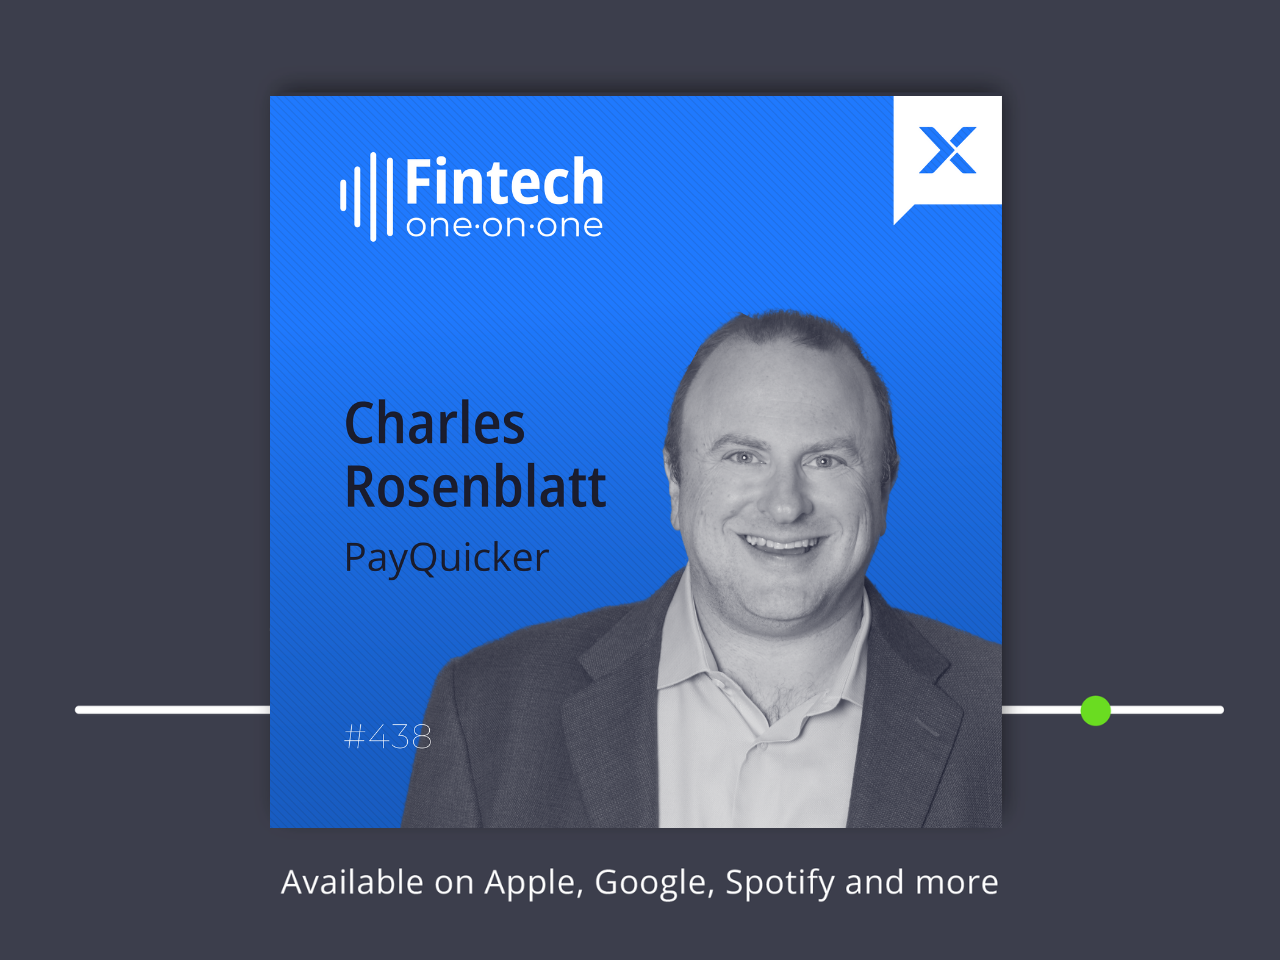 Charles Rosenblatt of PayQuicker